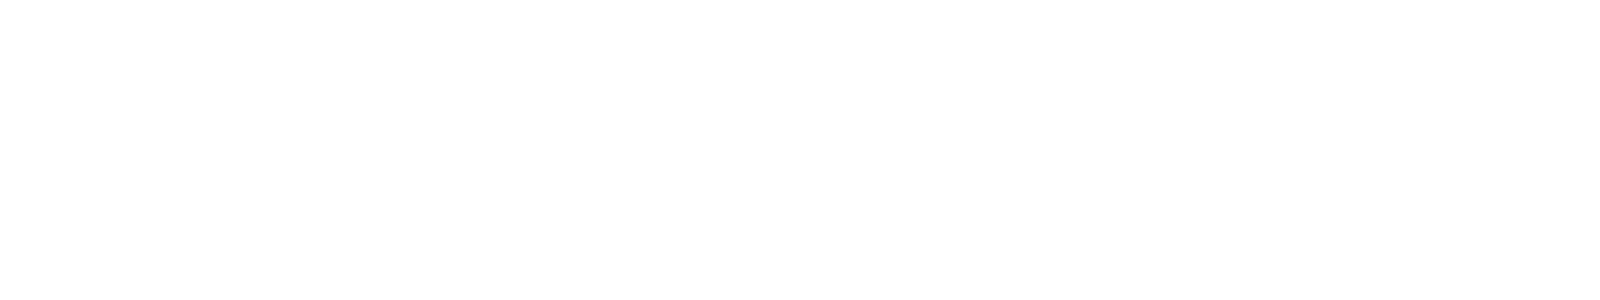 s7law logo biale2 - Oferta Medyczna dla Firm